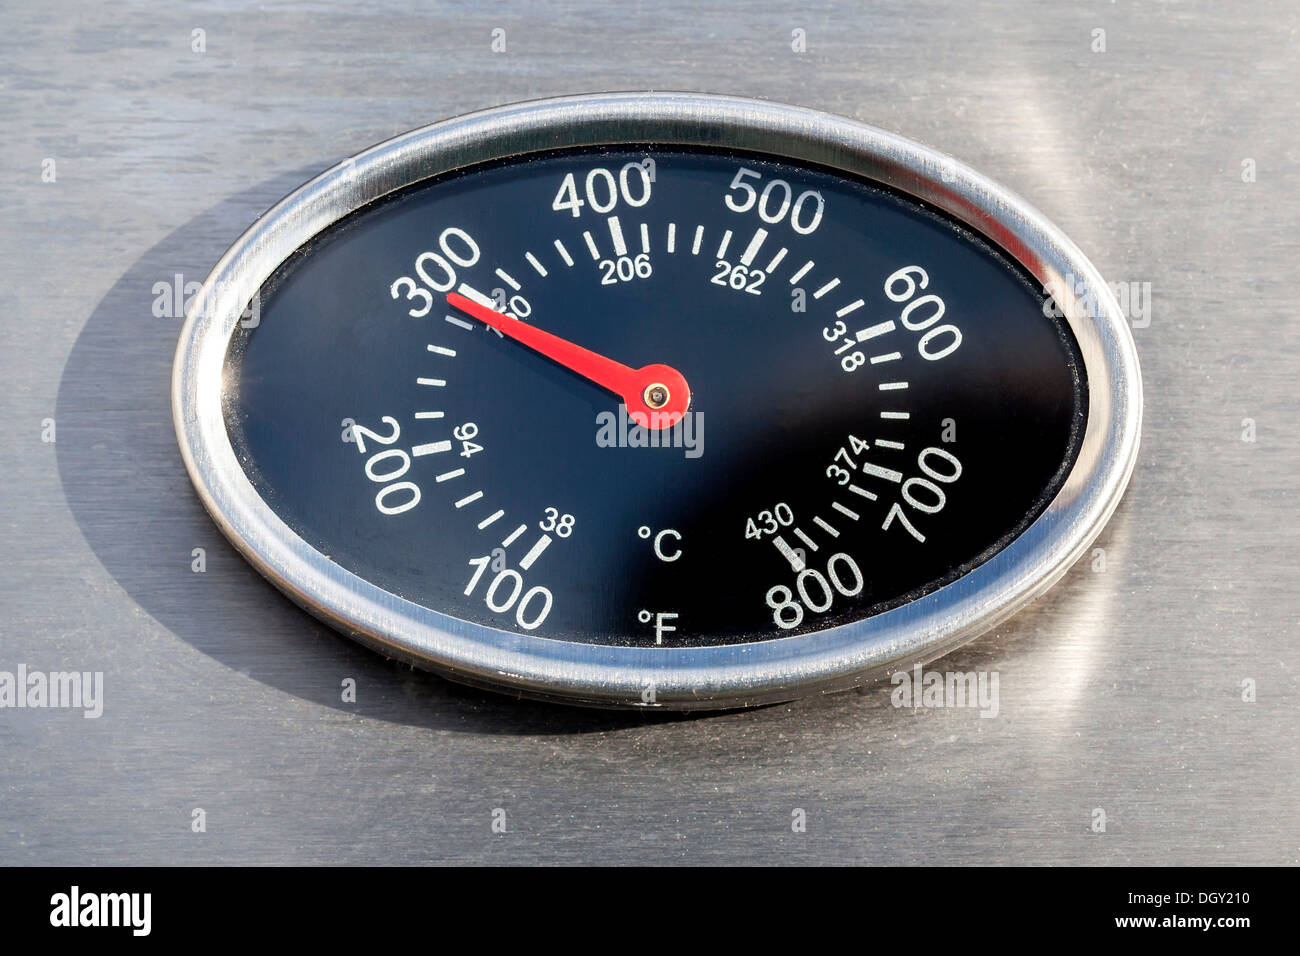 Thermomètre, affichage de la température en Fahrenheit et Celsius Celsius, ou sur un gril à gaz, Allemagne Banque D'Images